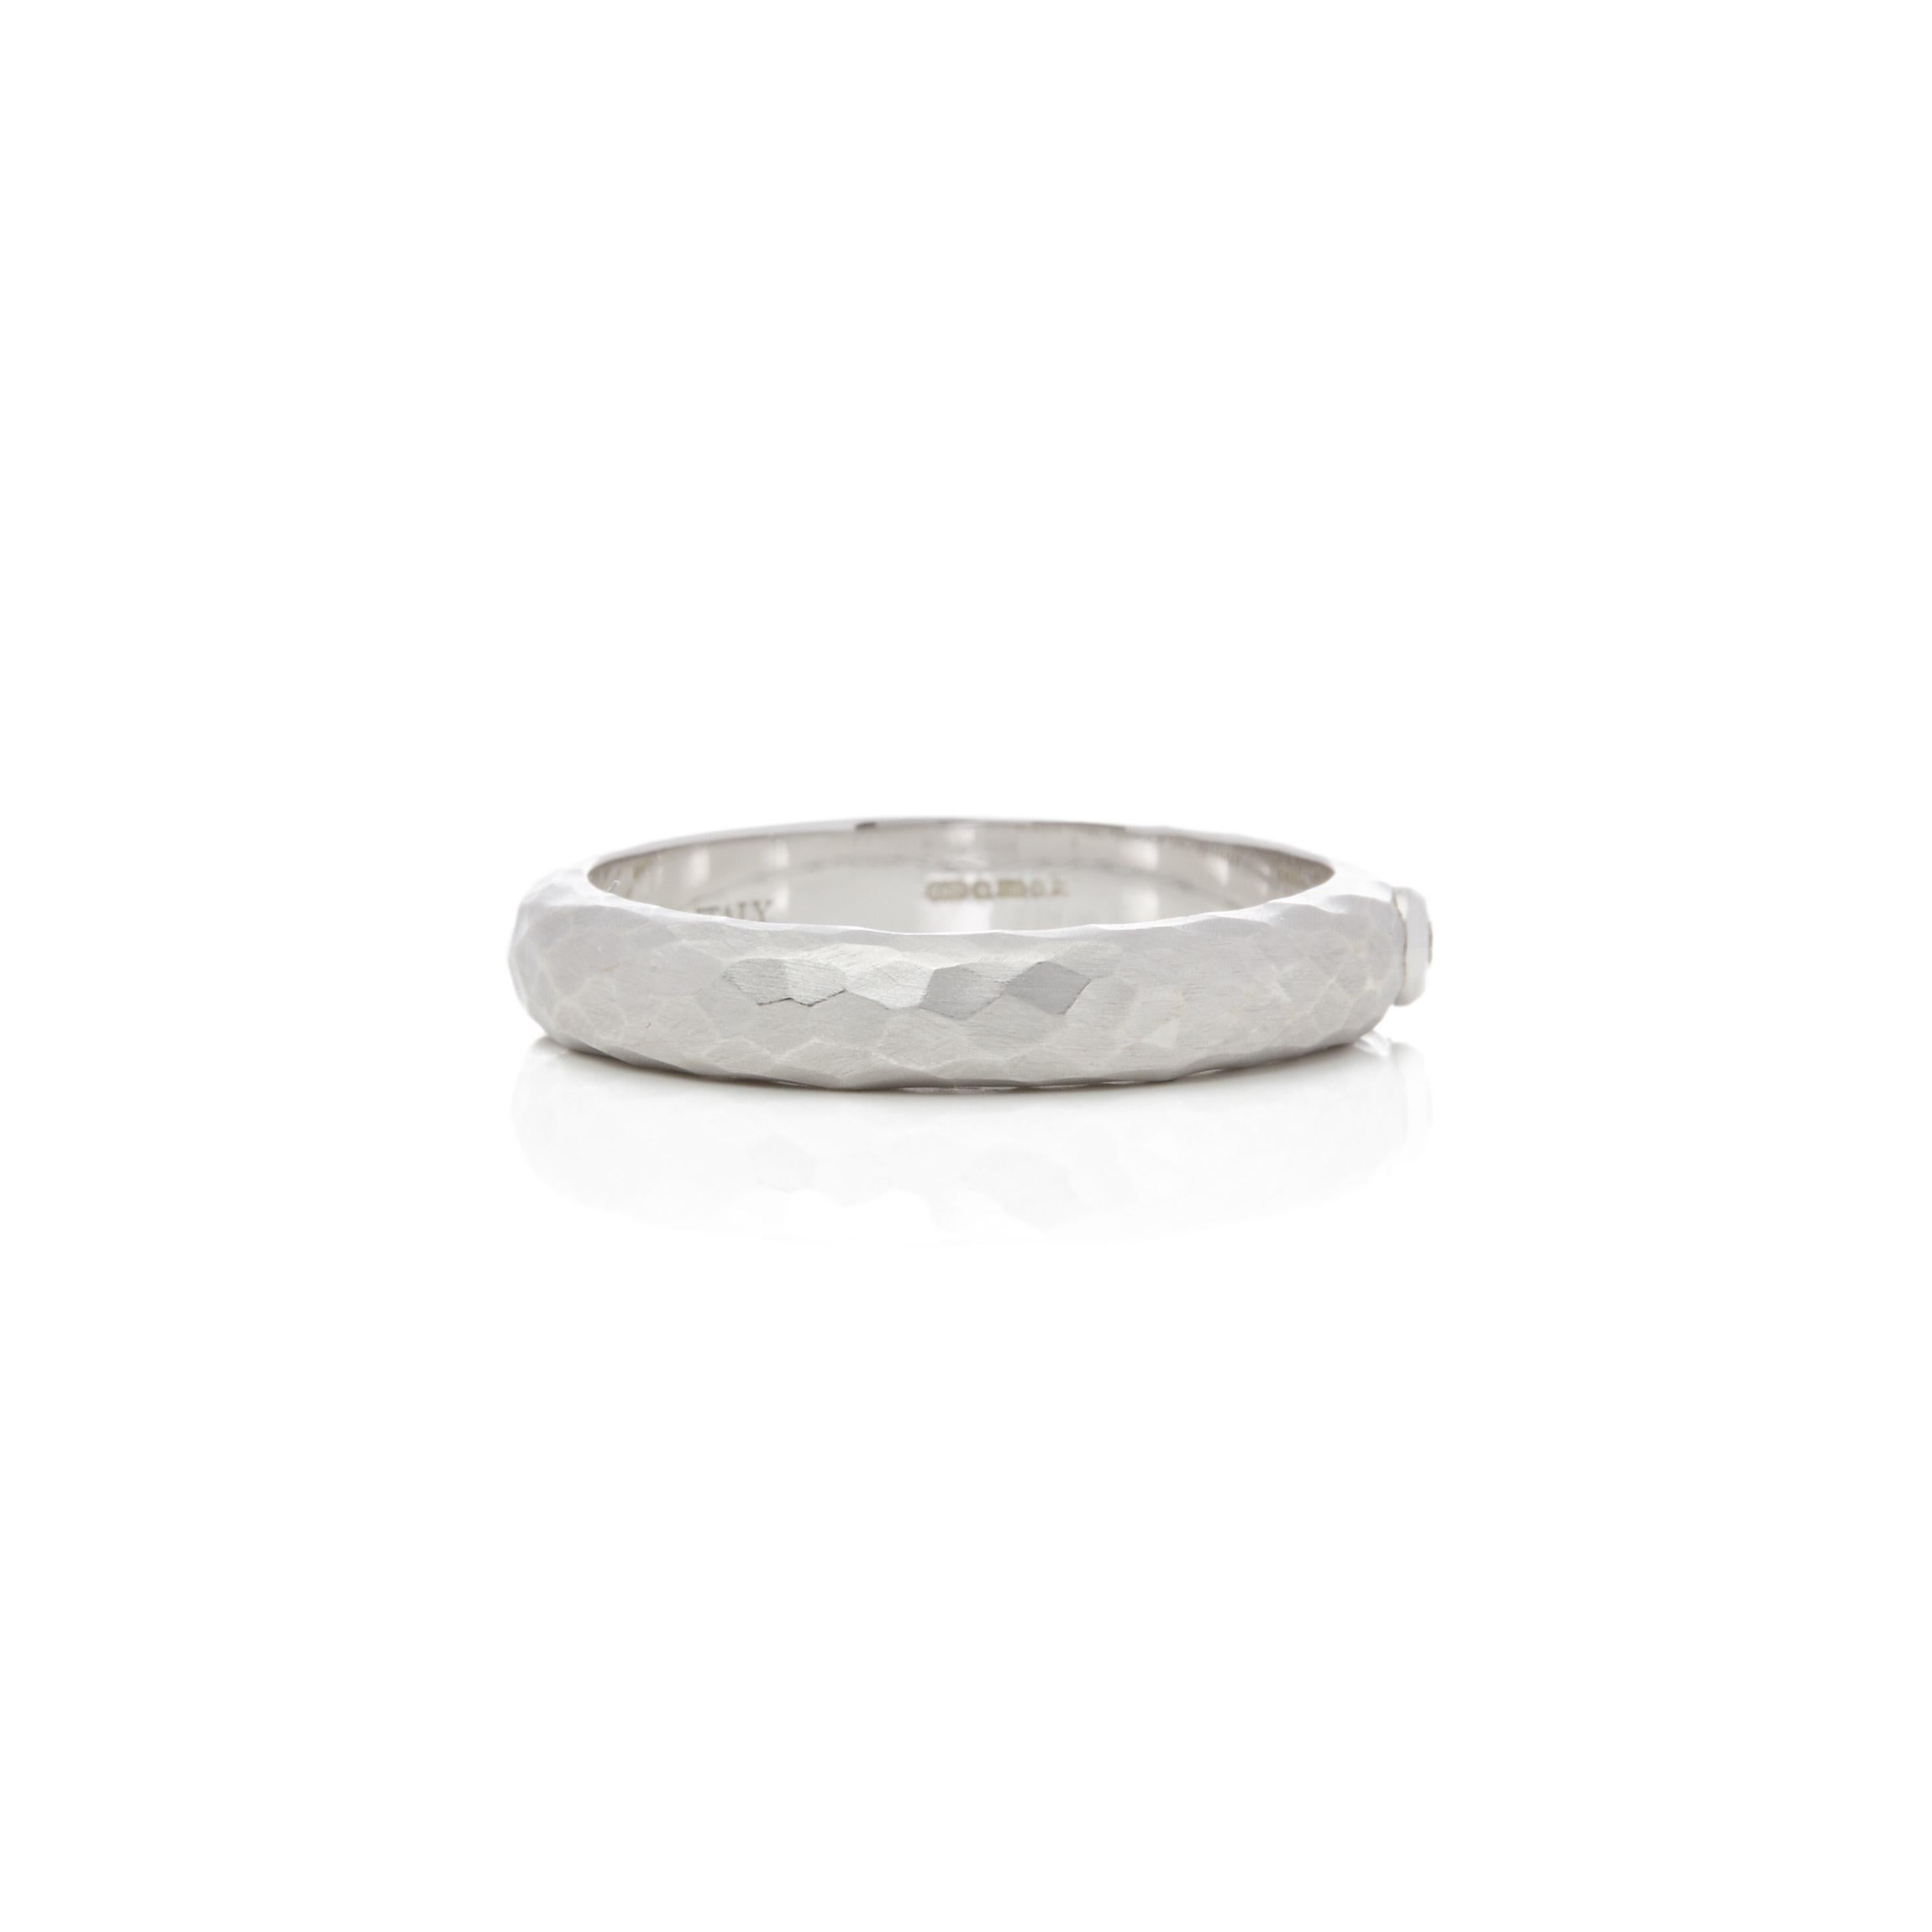 Dieser Ring von Tiffany & Co ist aus ihrer Paloma Picasso Collection'S und verfügt über einen einzelnen runden Brillanten in einem 18k Weißgold gehämmert Finish 4,23mm Band montiert. Fingergröße UK T, EU Größe 61 1/2, USA Größe 9 5/8. Komplett mit